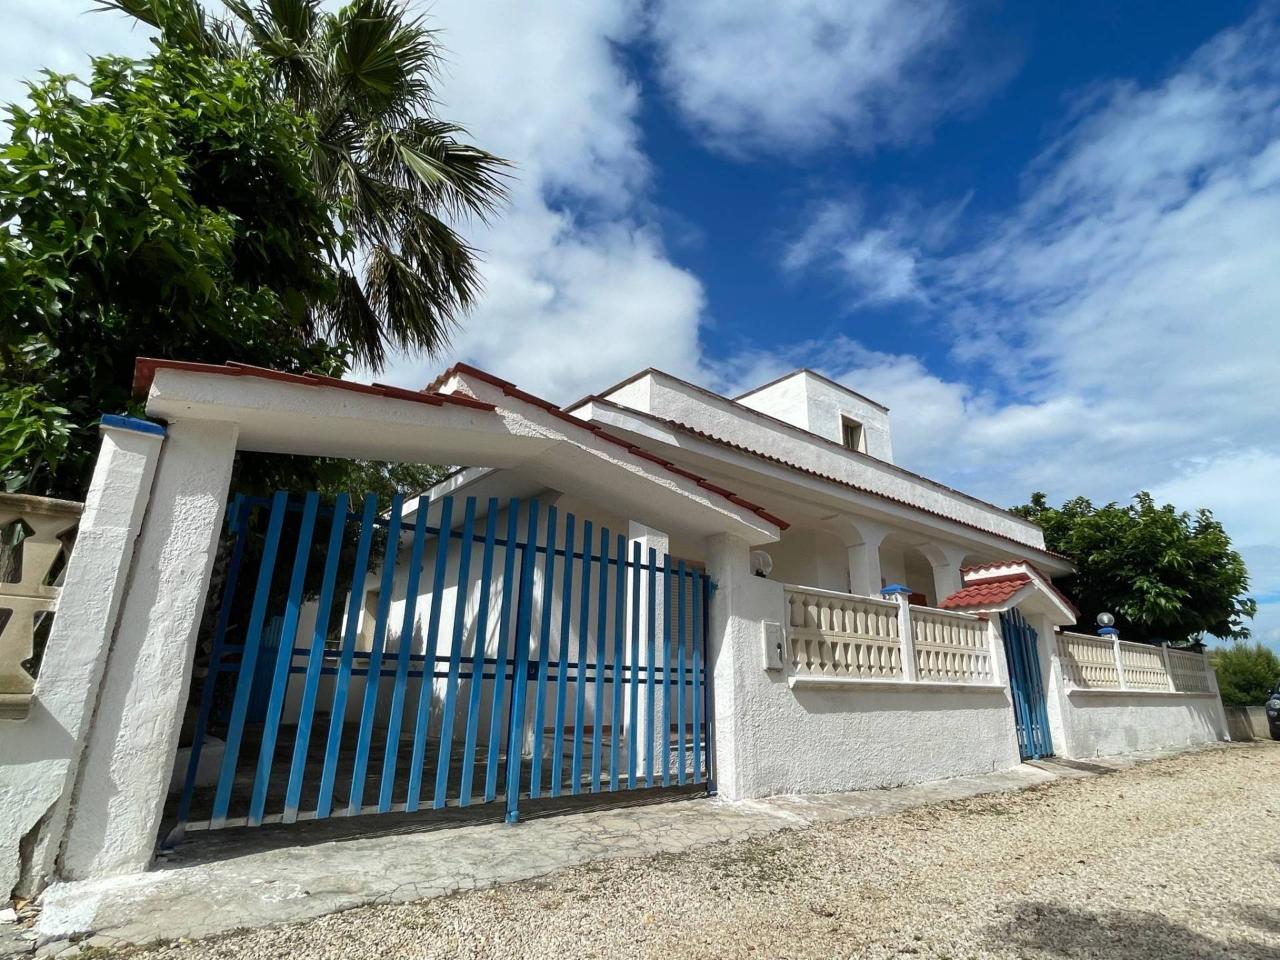 Villa in vendita a Manduria